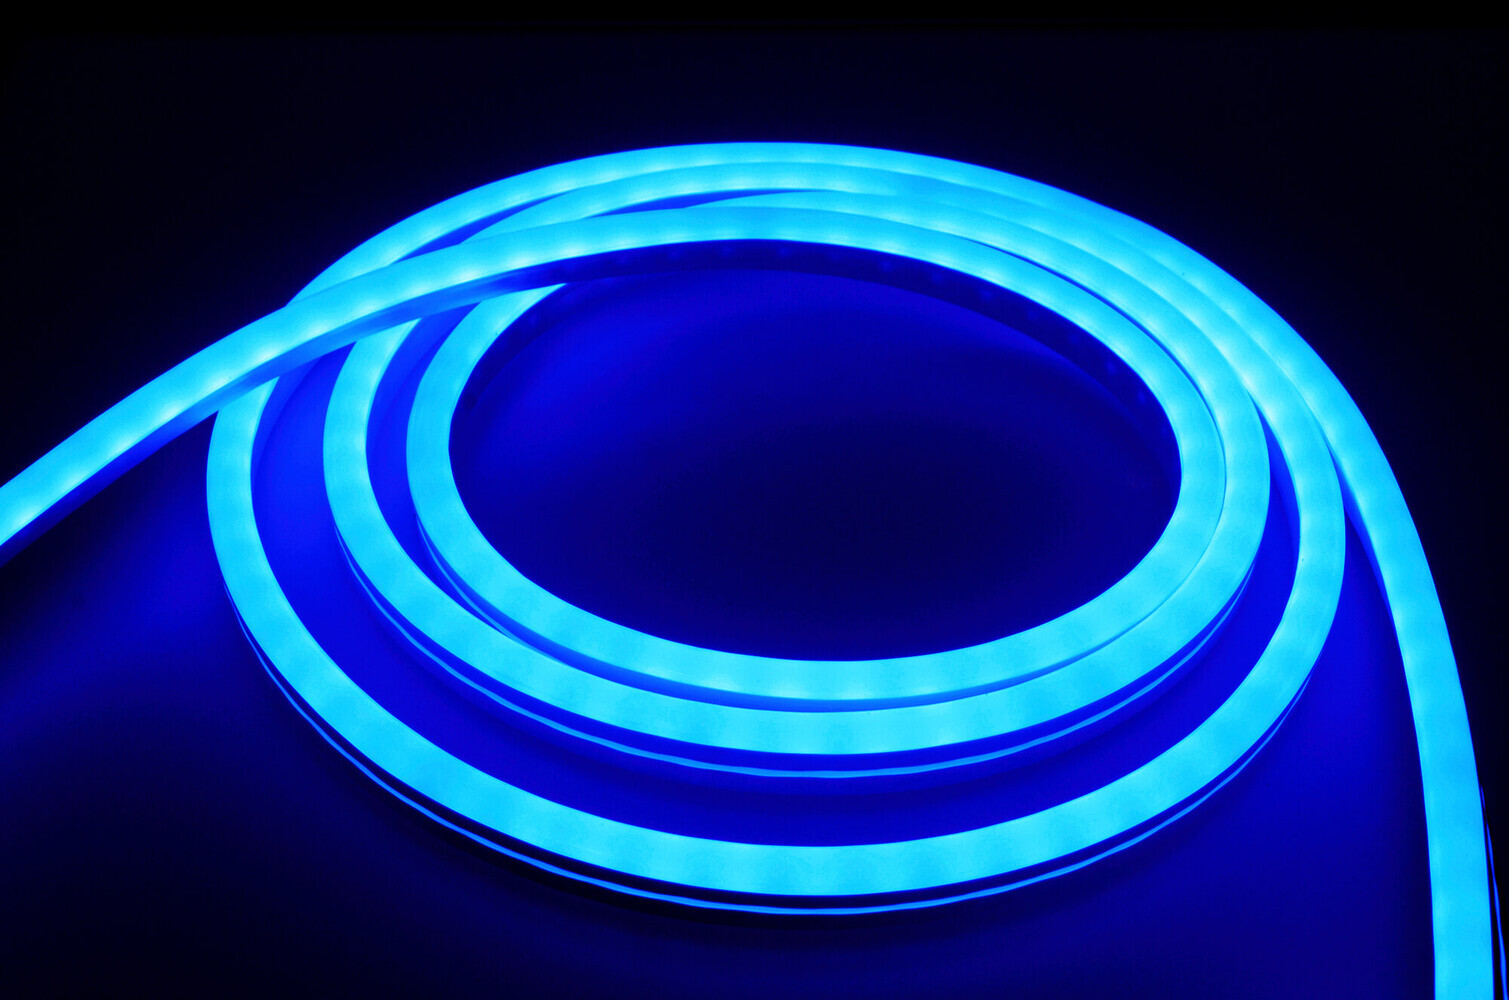 Hochwertiger, langlebiger LED Streifen von LED Universum in atemberaubendem RGB Farbspiel